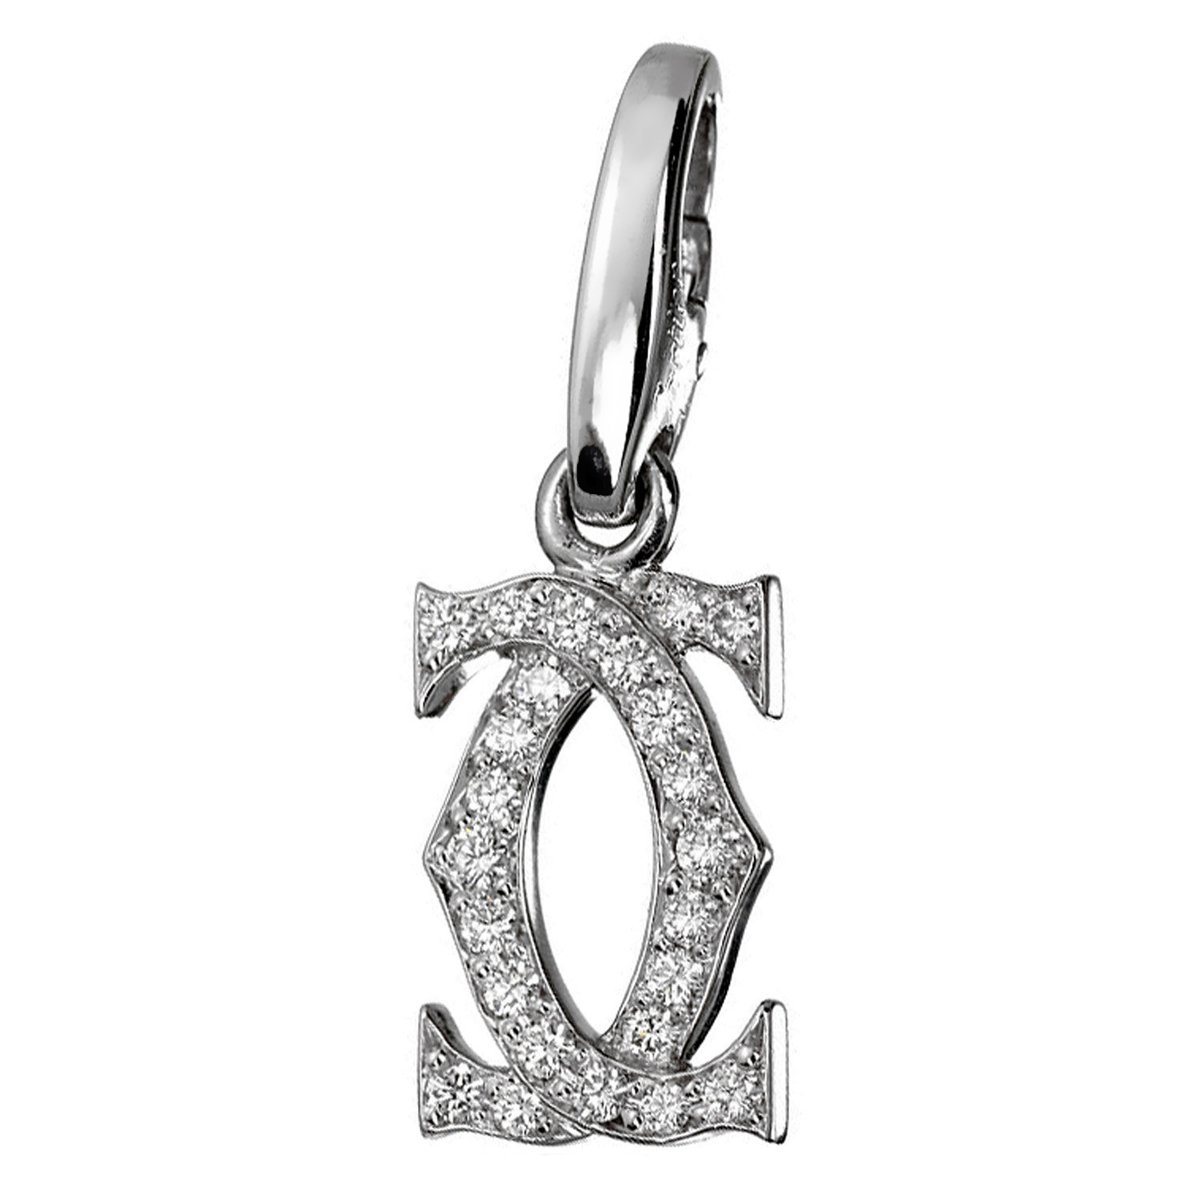 Authentic! Cartier Double C 18K White Gold Diamond Pendant Necklace